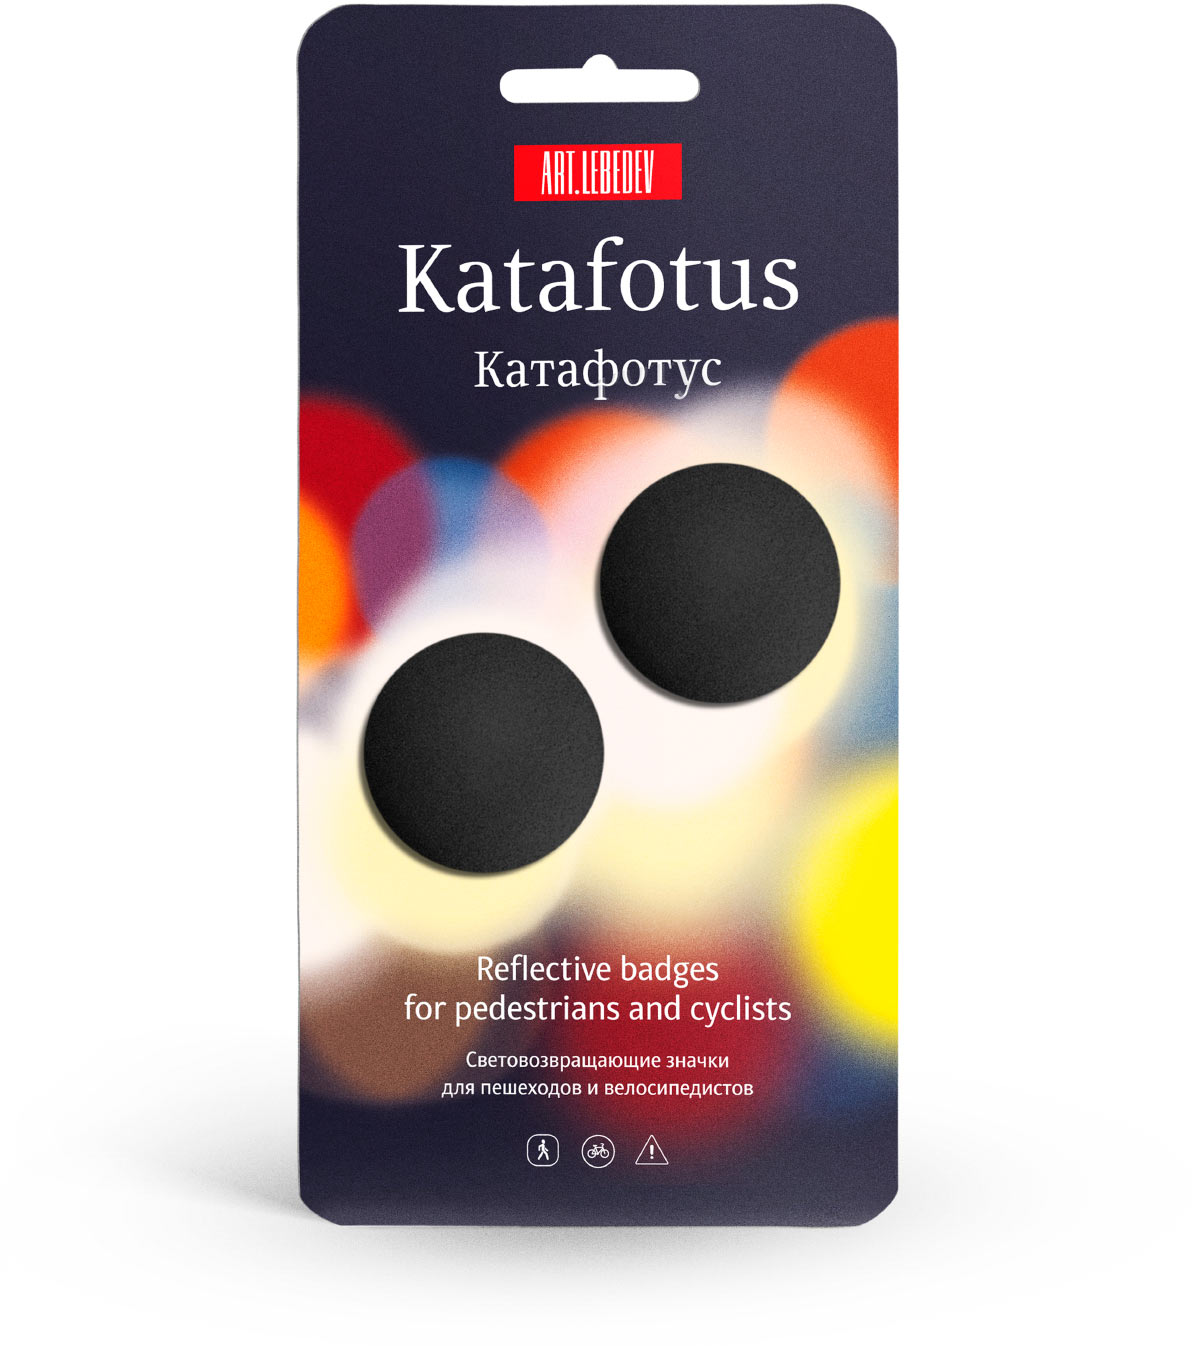 katafotus package 01